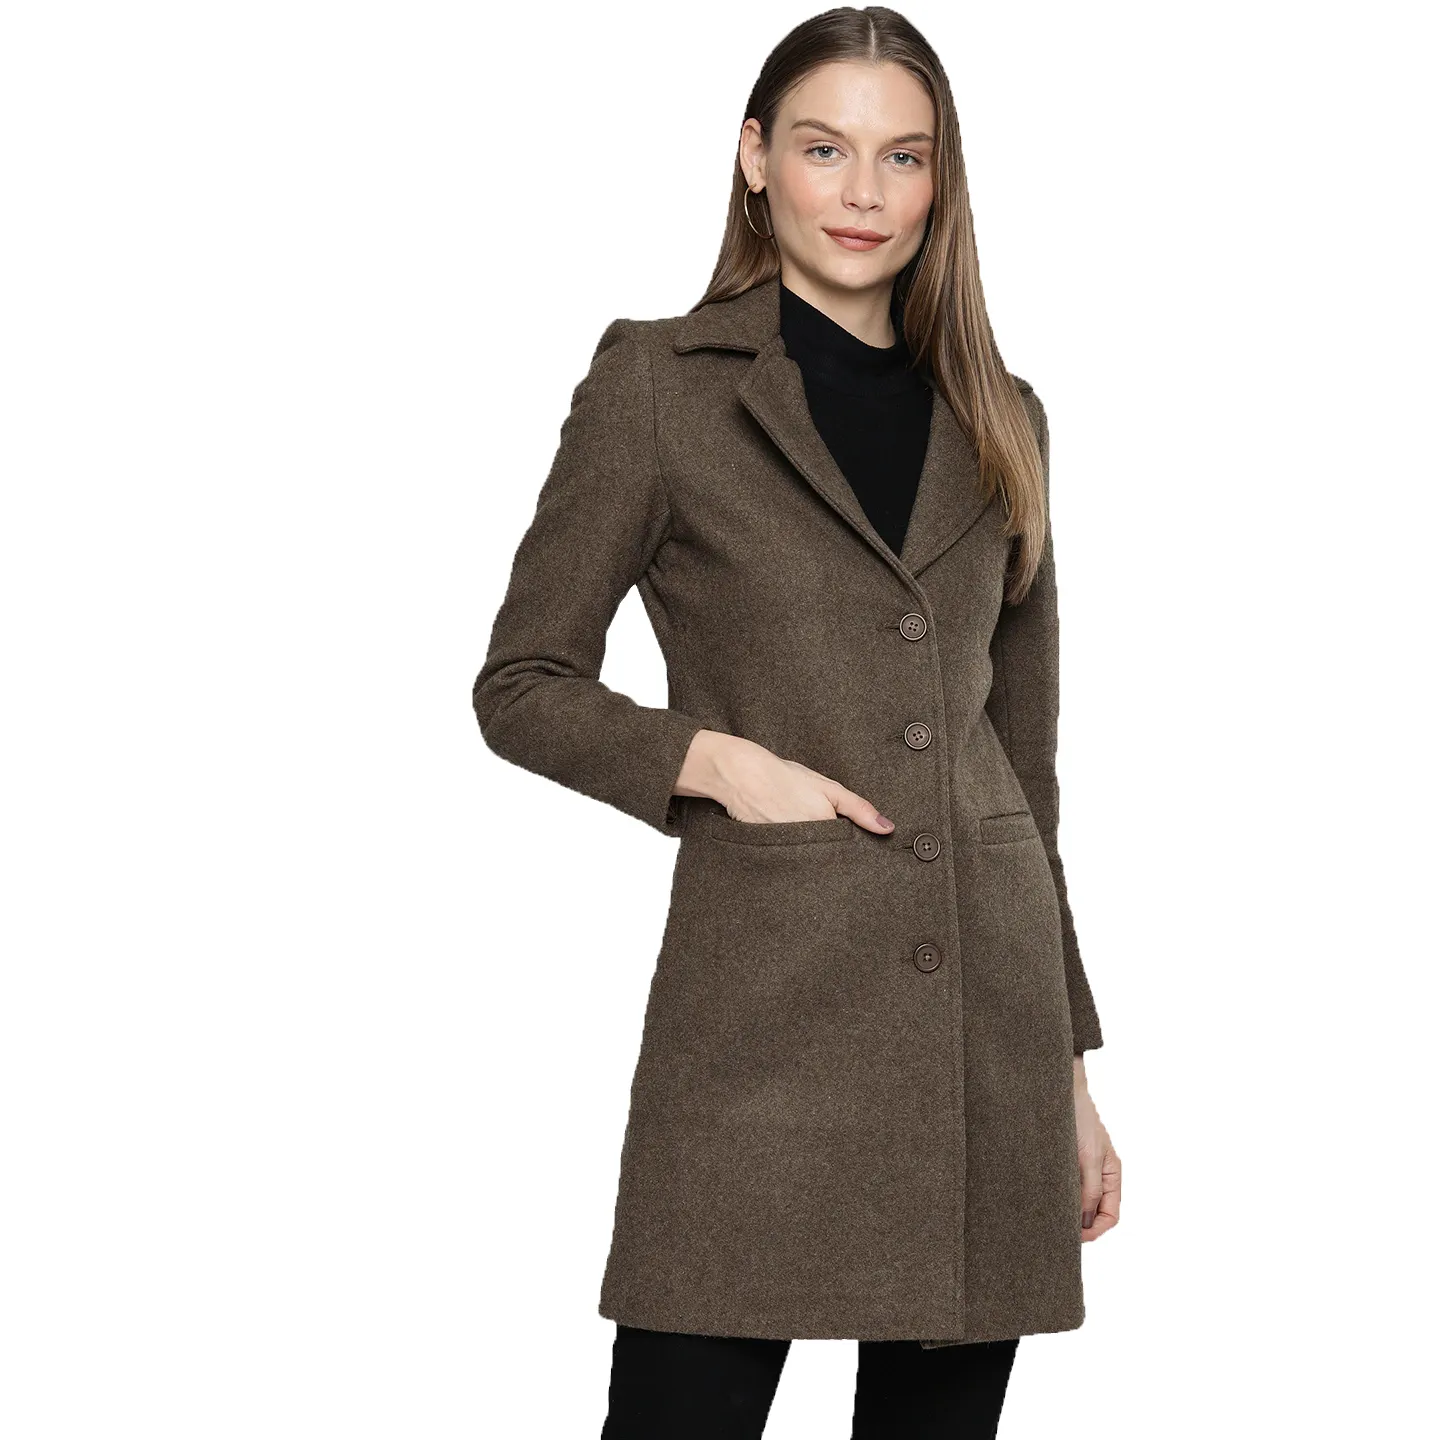 2021 yeni stil özelleştirilmiş uzun palto yün bayan yün palto kadın artı boyutu ve uzun ceket kış trençkot kadın